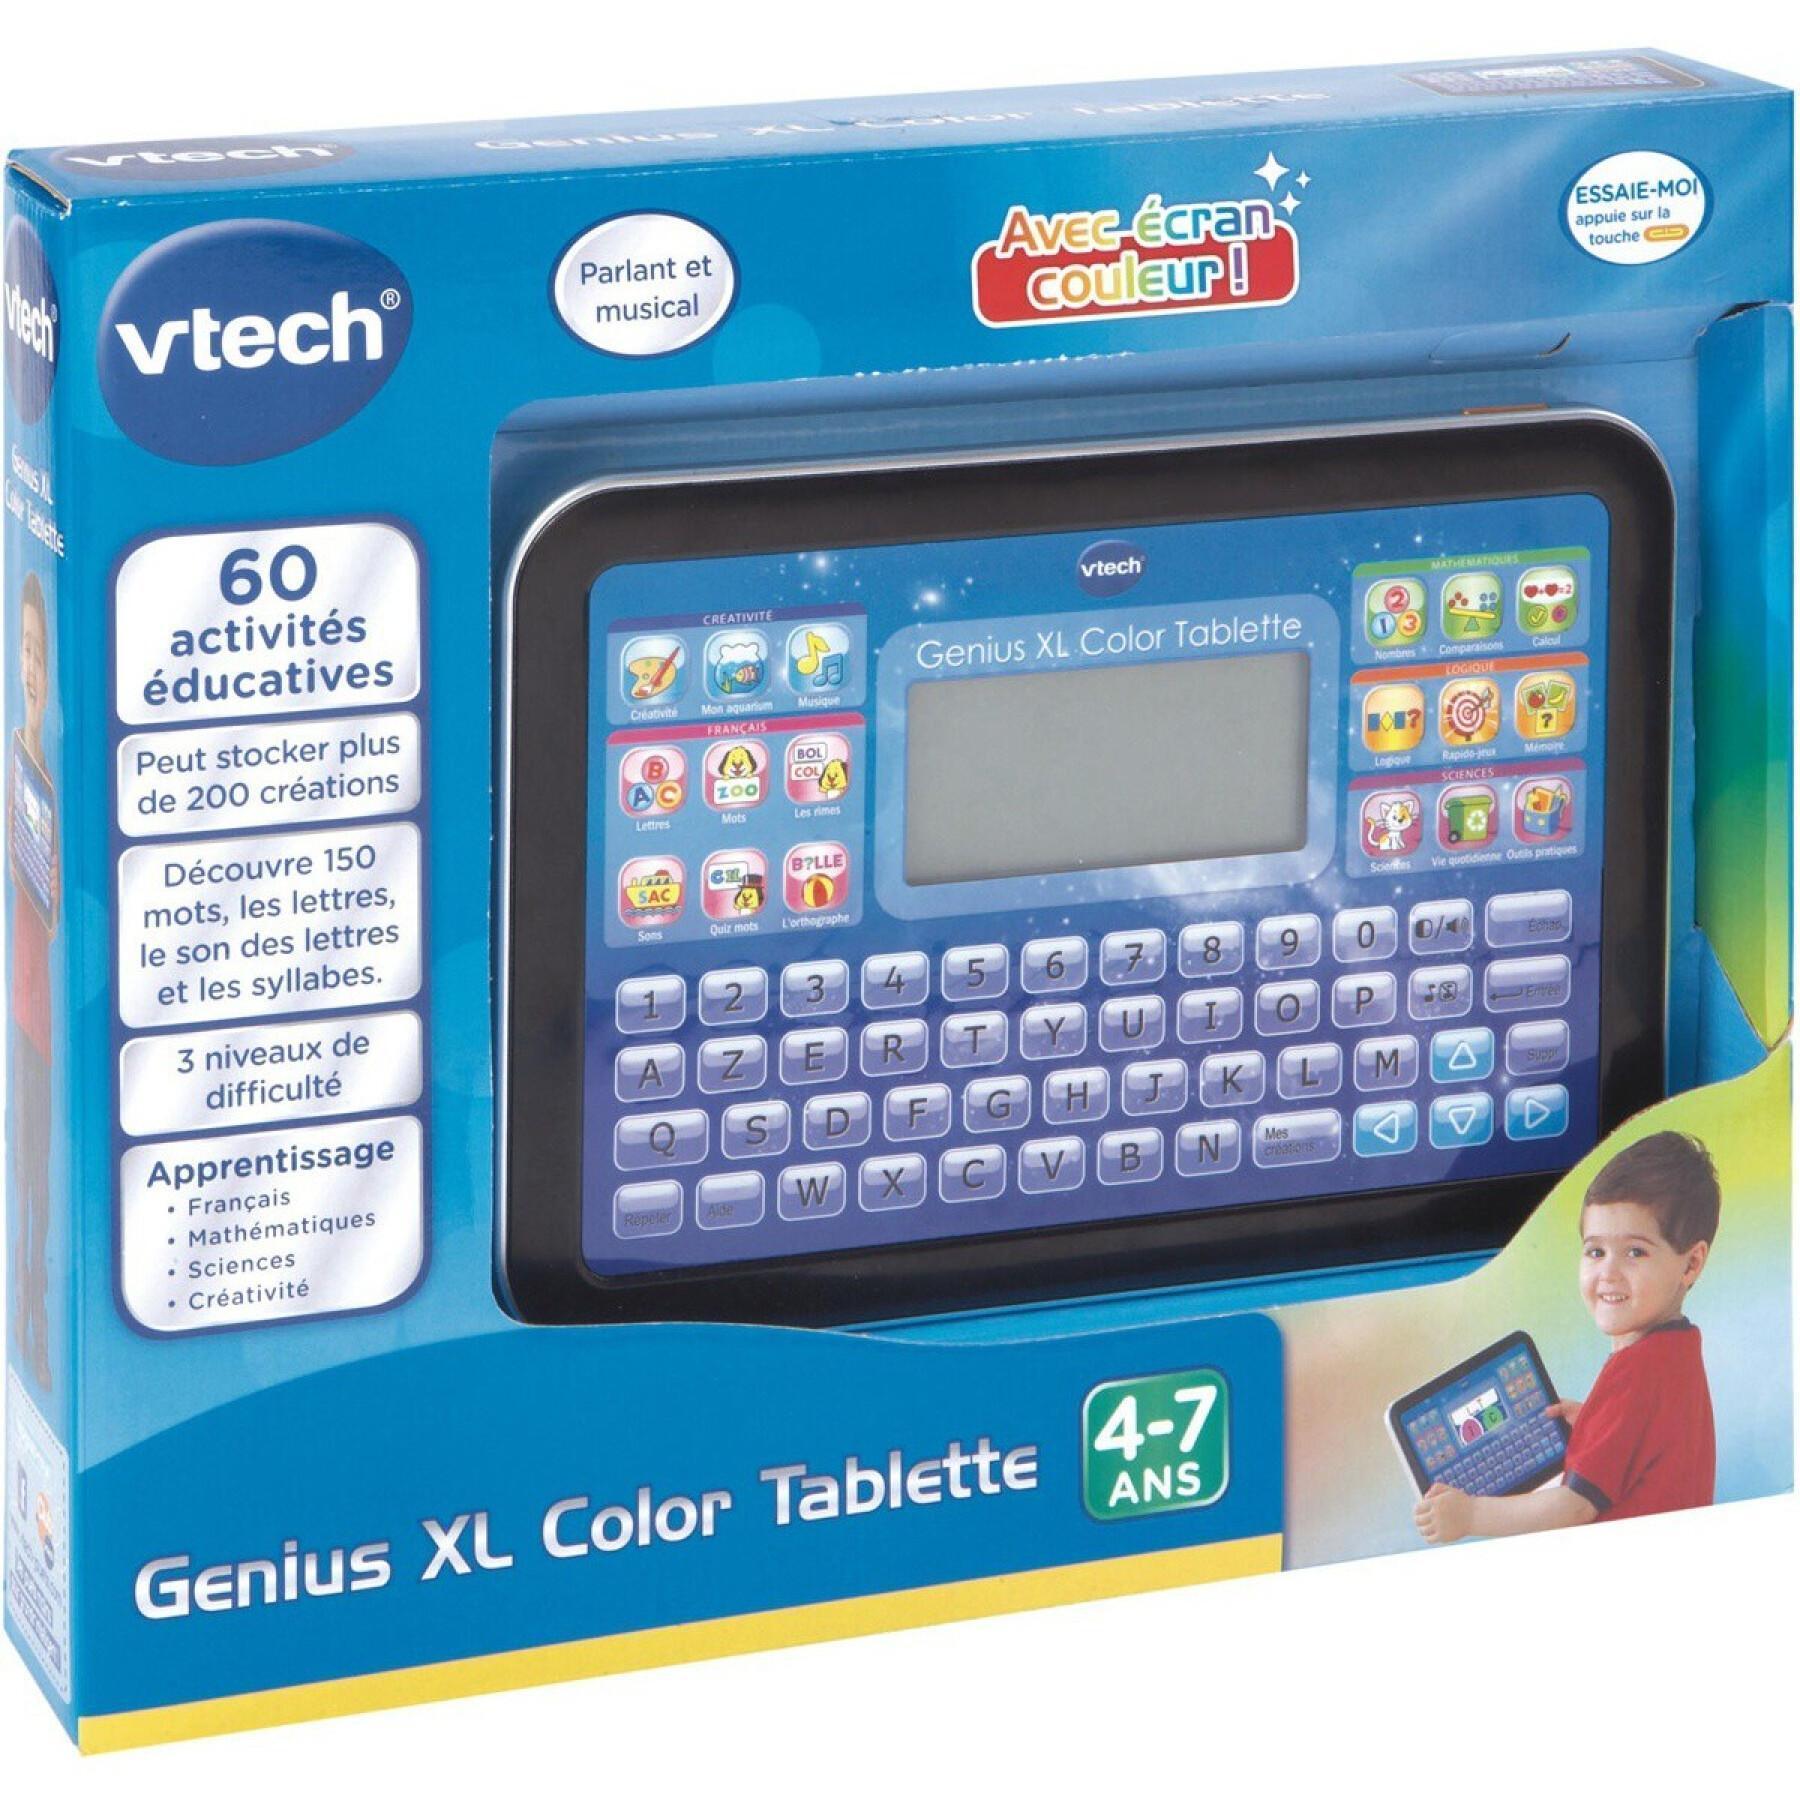 Genius Xl Color Tablette Vtech Electronics Europe - Jouets